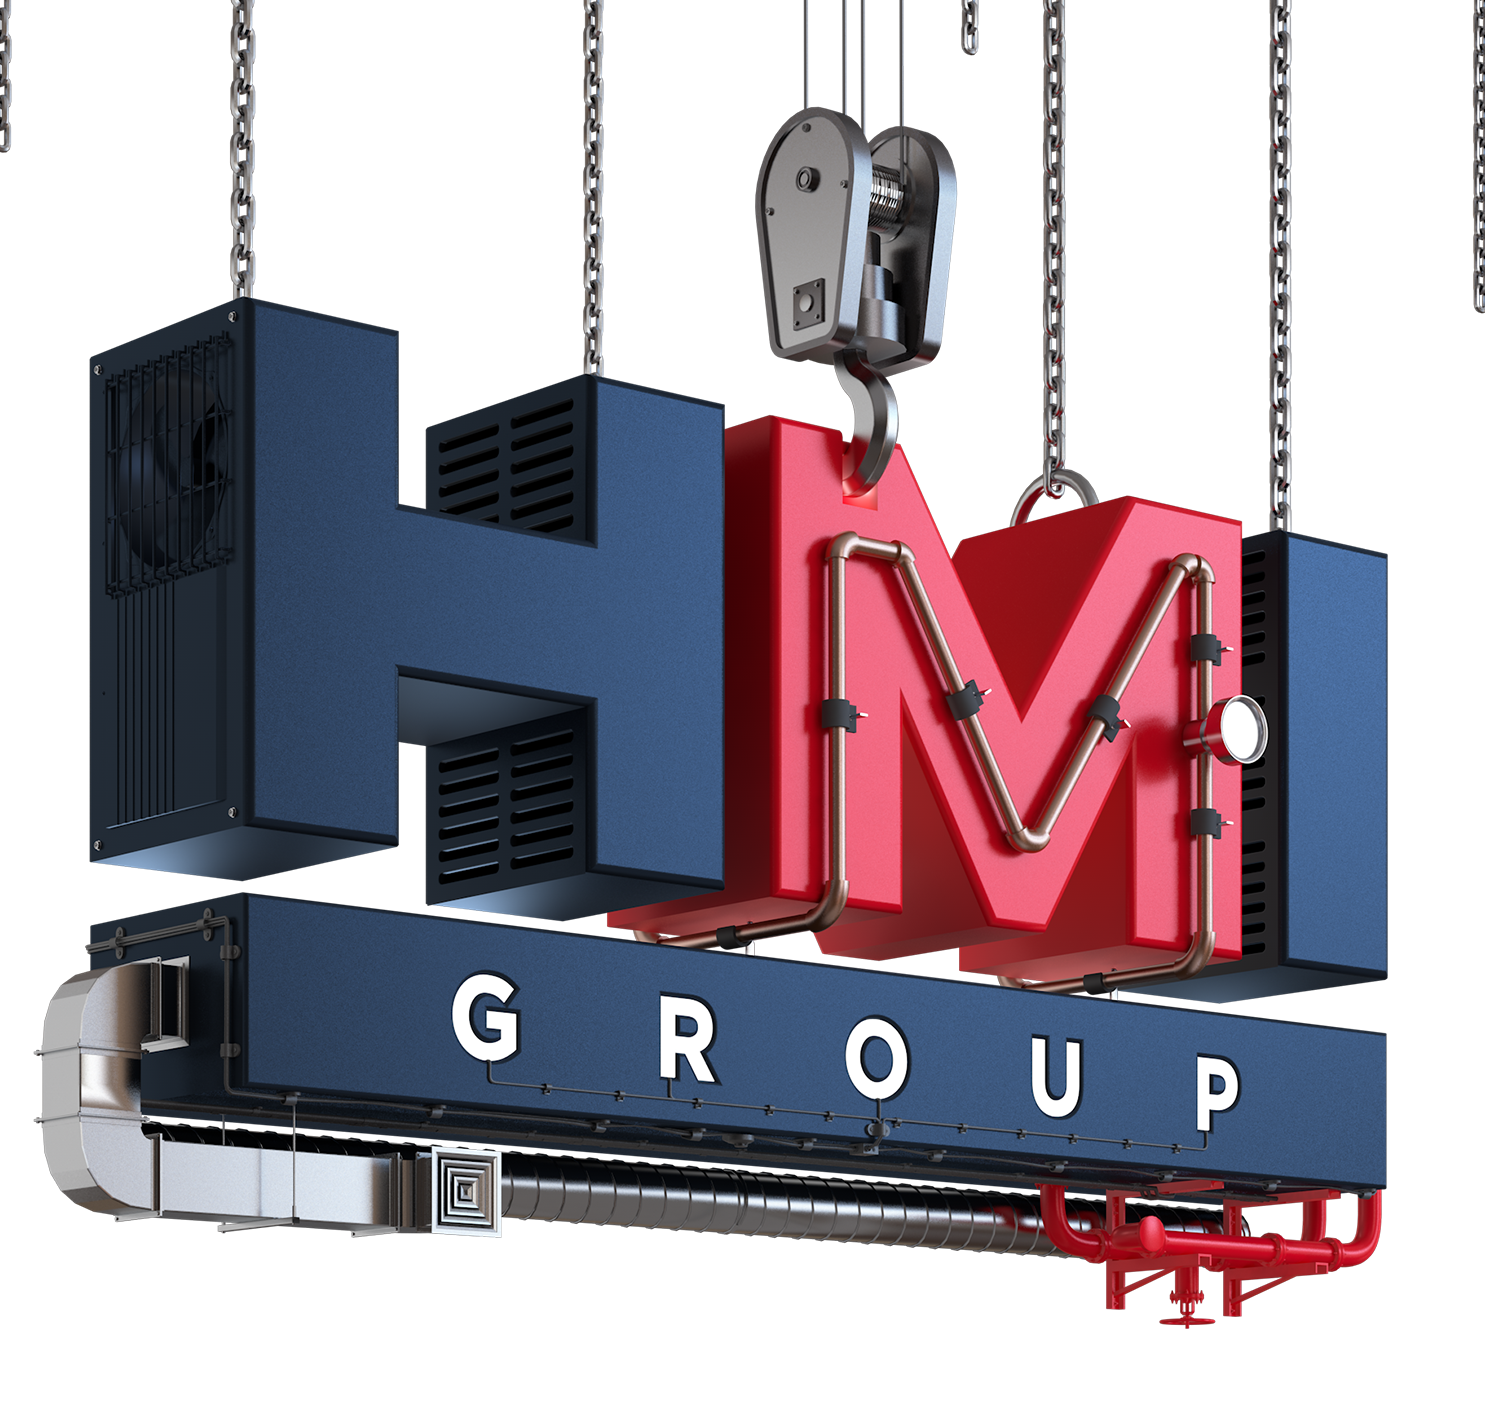 HMI Group GmbH